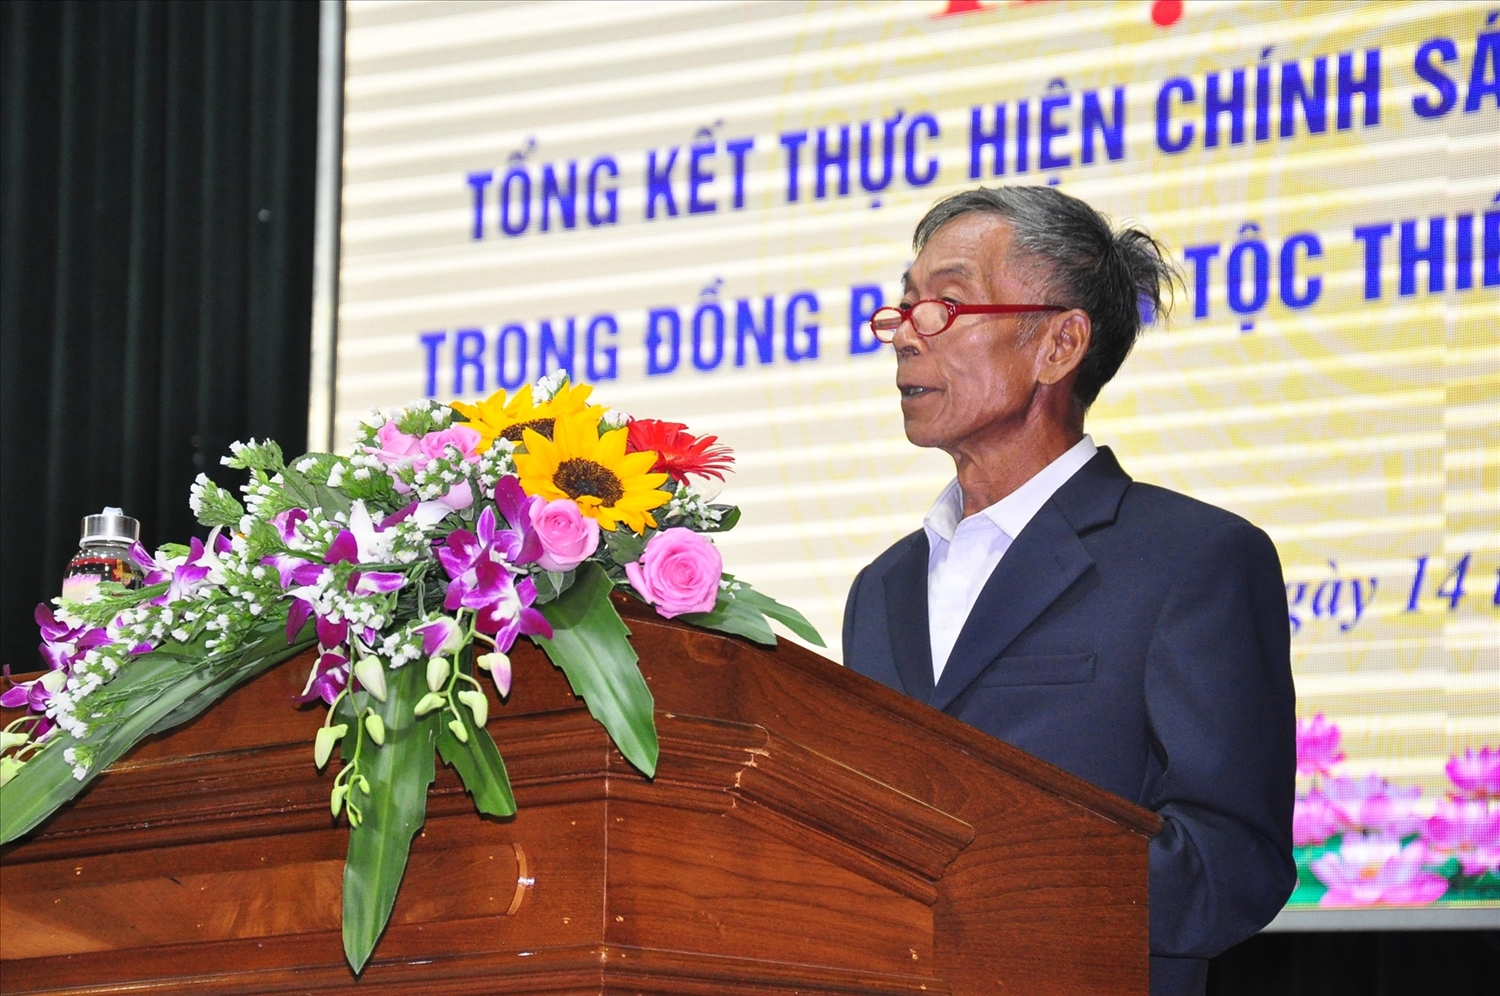 Ông Hồ Văn Dục, Người có uy tín tại xã Phước Gia (Hiệp Đức) trình bày tham luận tại Hội nghị Tổng kết chính sách đối với Người có uy tín trong đồng bào DTTS tỉnh Quảng Nam, giai đoạn 2011-2022. 